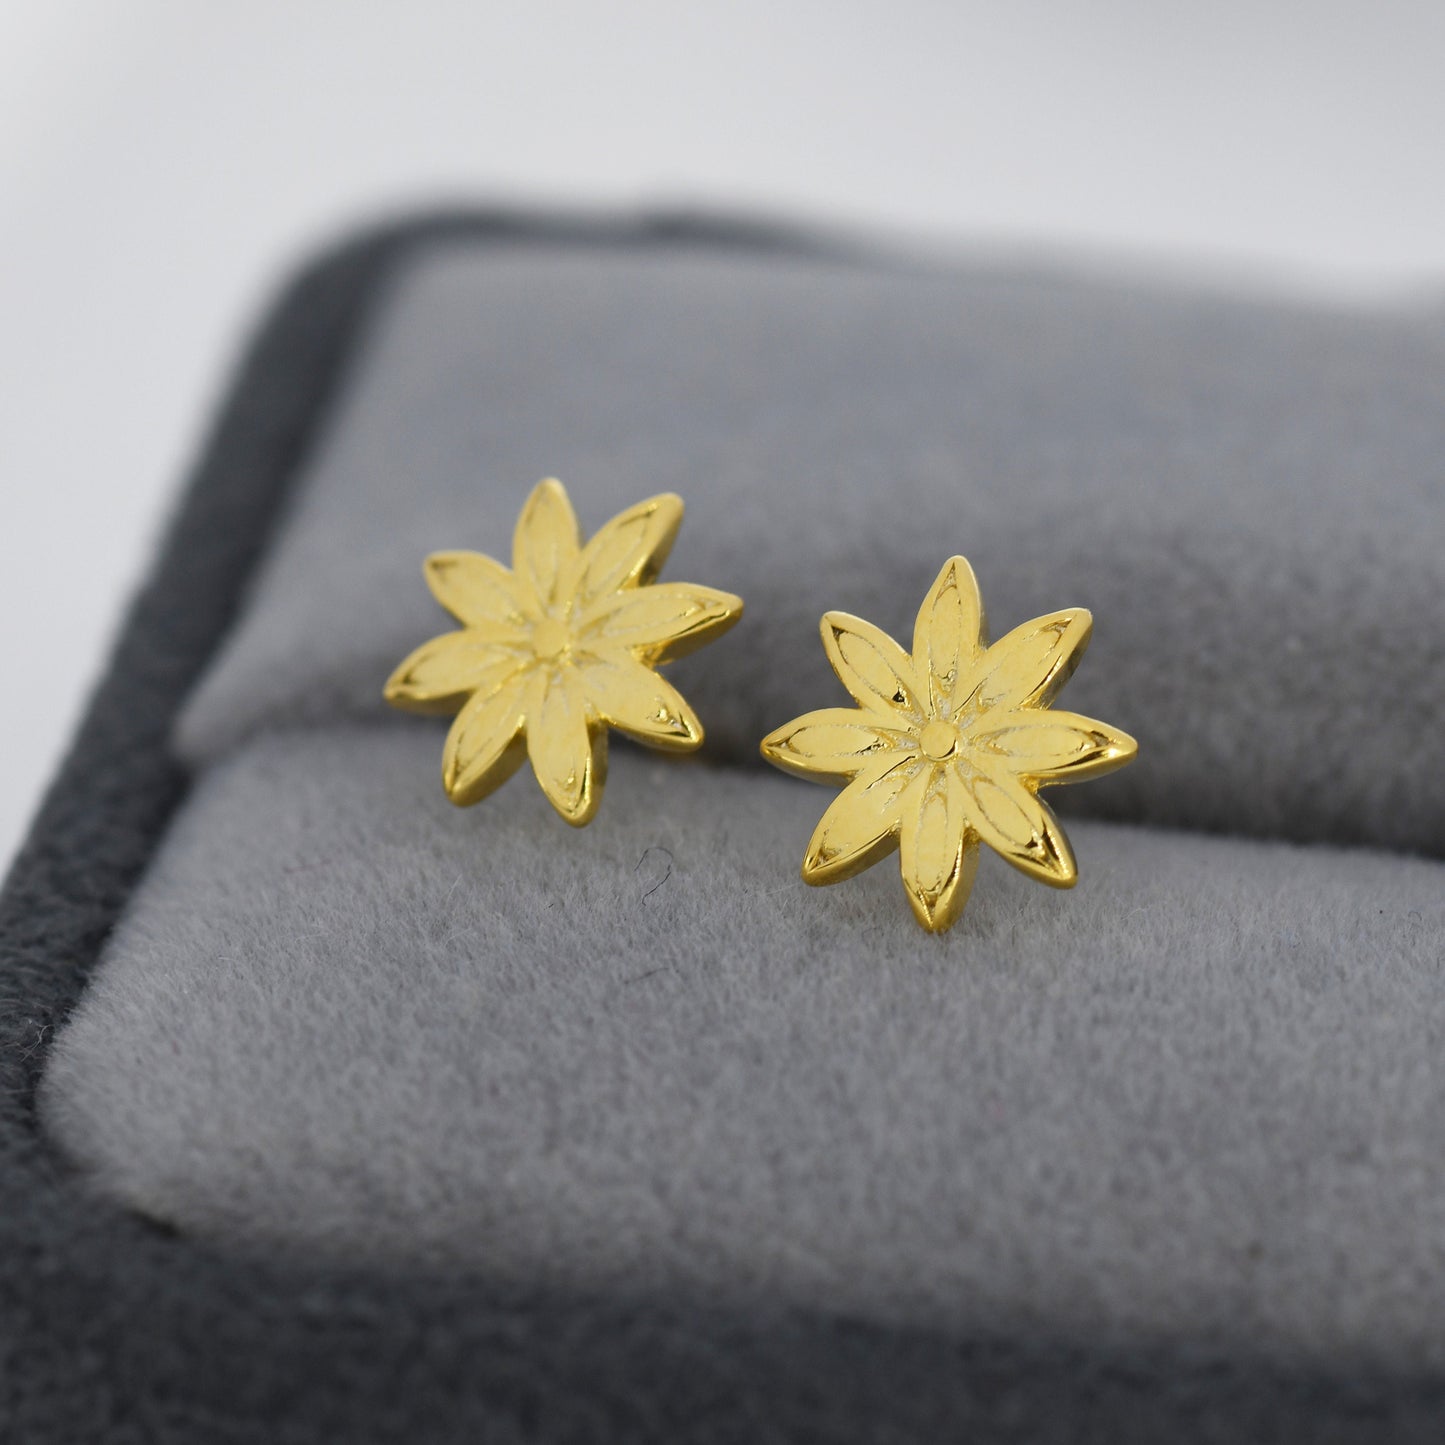 Star Anise Stud Earrings in Sterling Silver, Silver or Gold, Flower Earrings